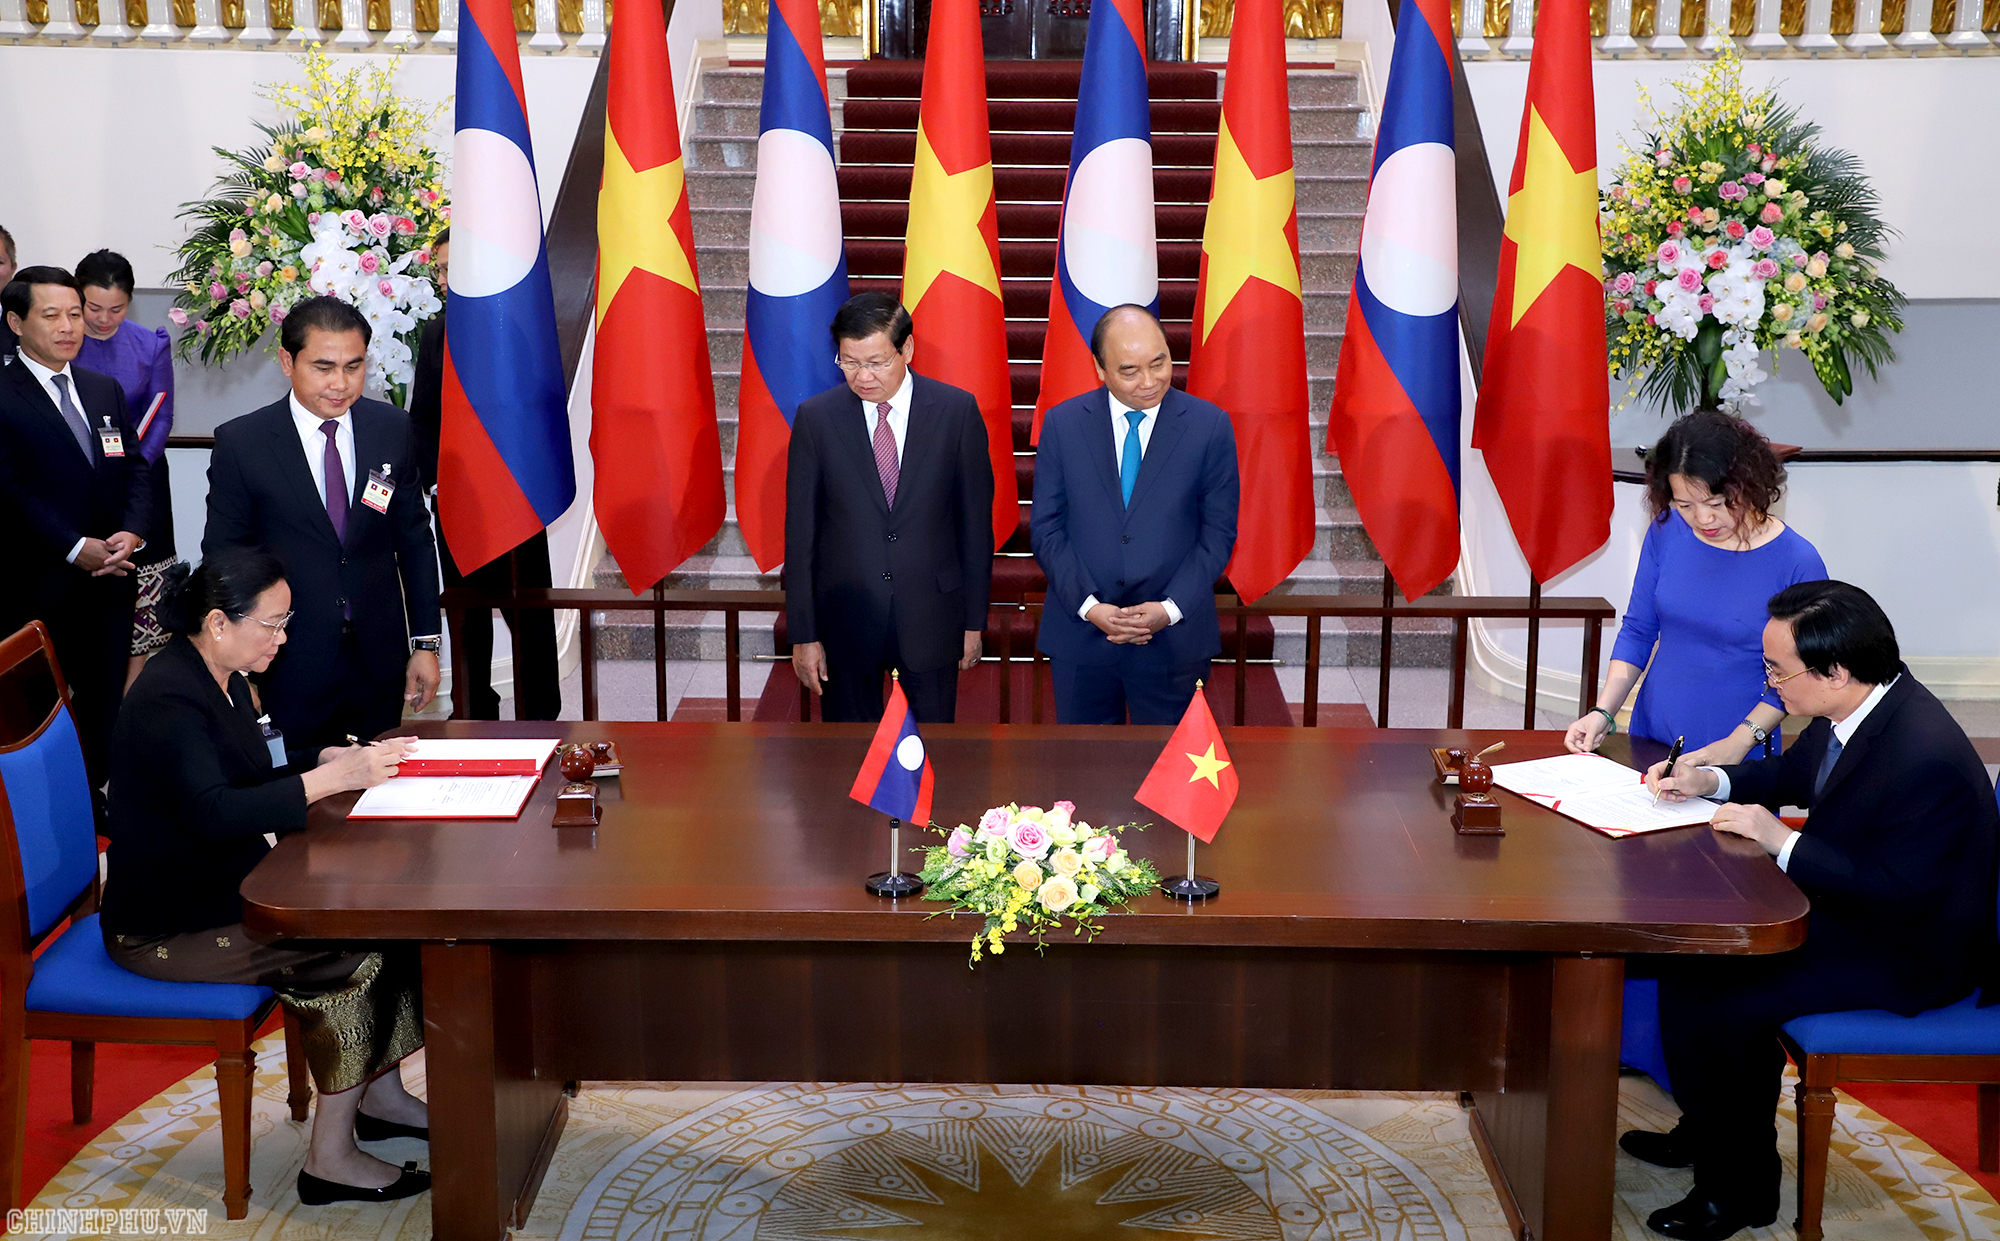 Thủ tướng Nguyễn Xuân Phúc và Thủ tướng  chứng kiến lễ ký và trao 8 văn kiện hợp tác trong các lĩnh vực kinh tế, đầu tư, giáo dục, tài chính, ngân hàng, năng lượng, hàng không (Ảnh: VGP)